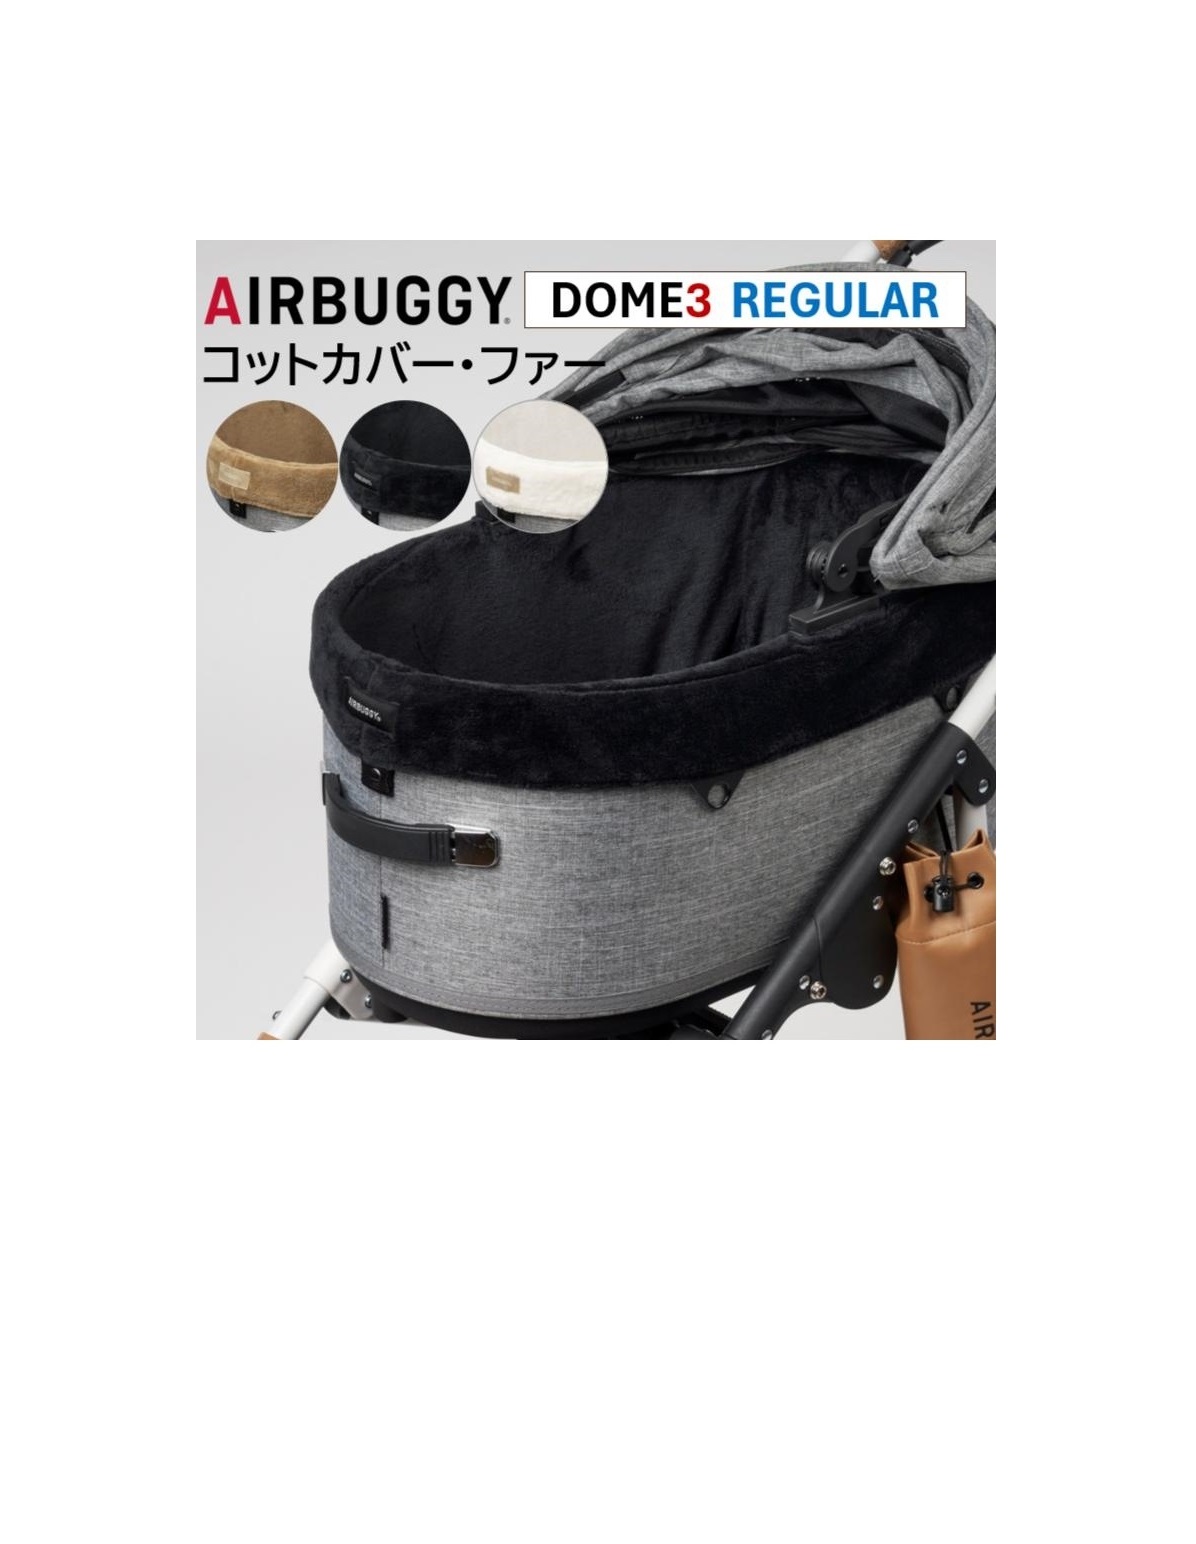 エアバギー DOME3専用 コットカバー ファー レギュラー ペットカートドッグカート パーツ airbuggy cotcover for dogアイキャッチ画像